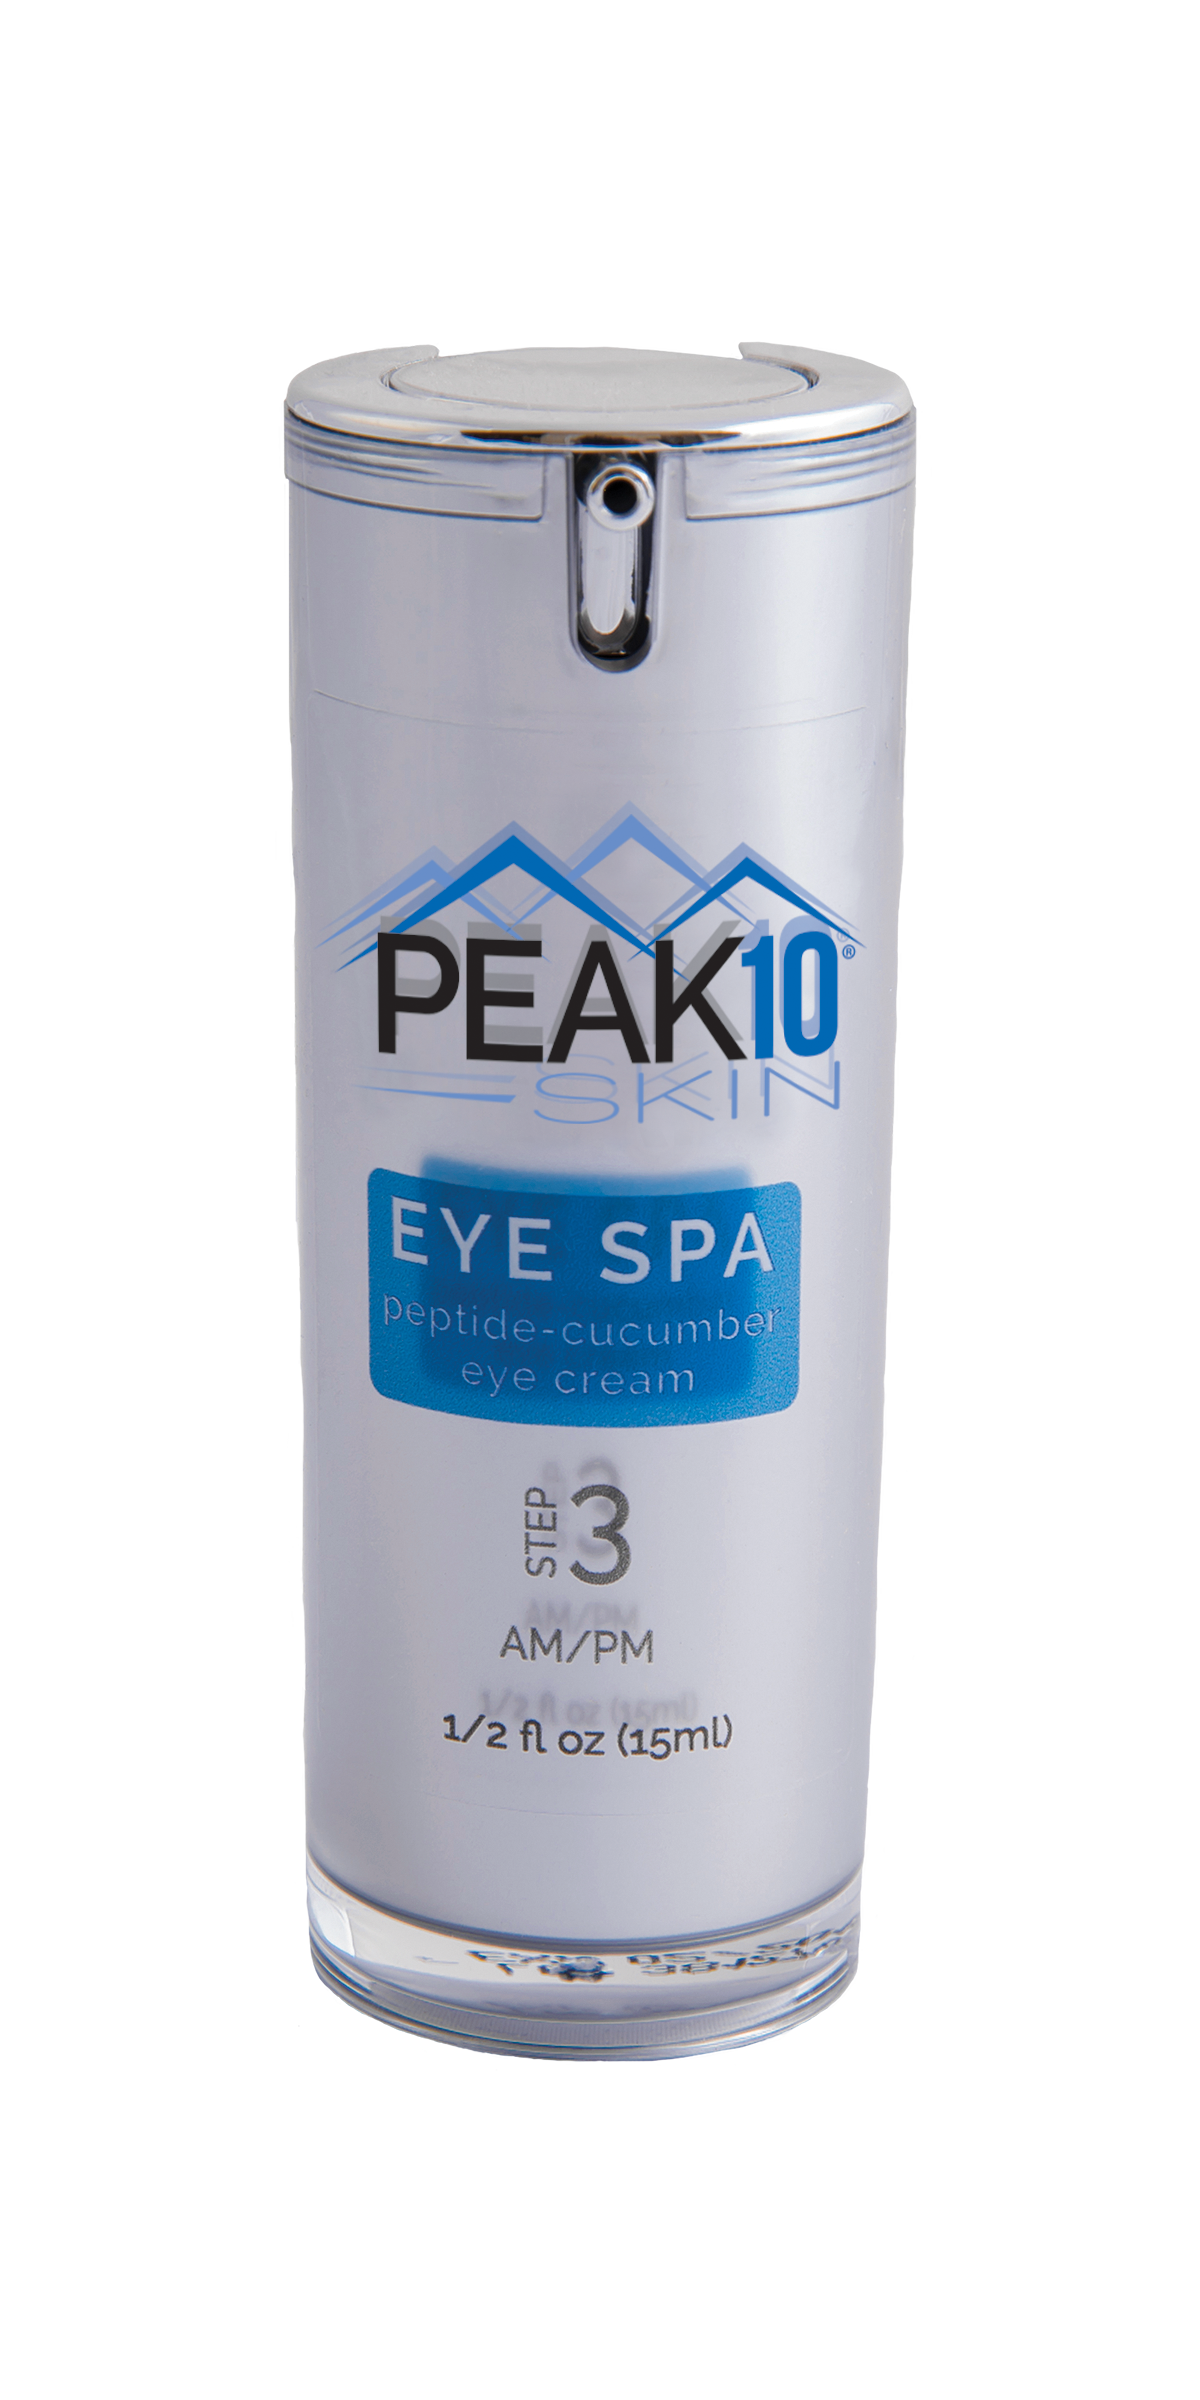 PEAK 10 SKIN Eye Spa Peptide-Cucumber Eye Cream